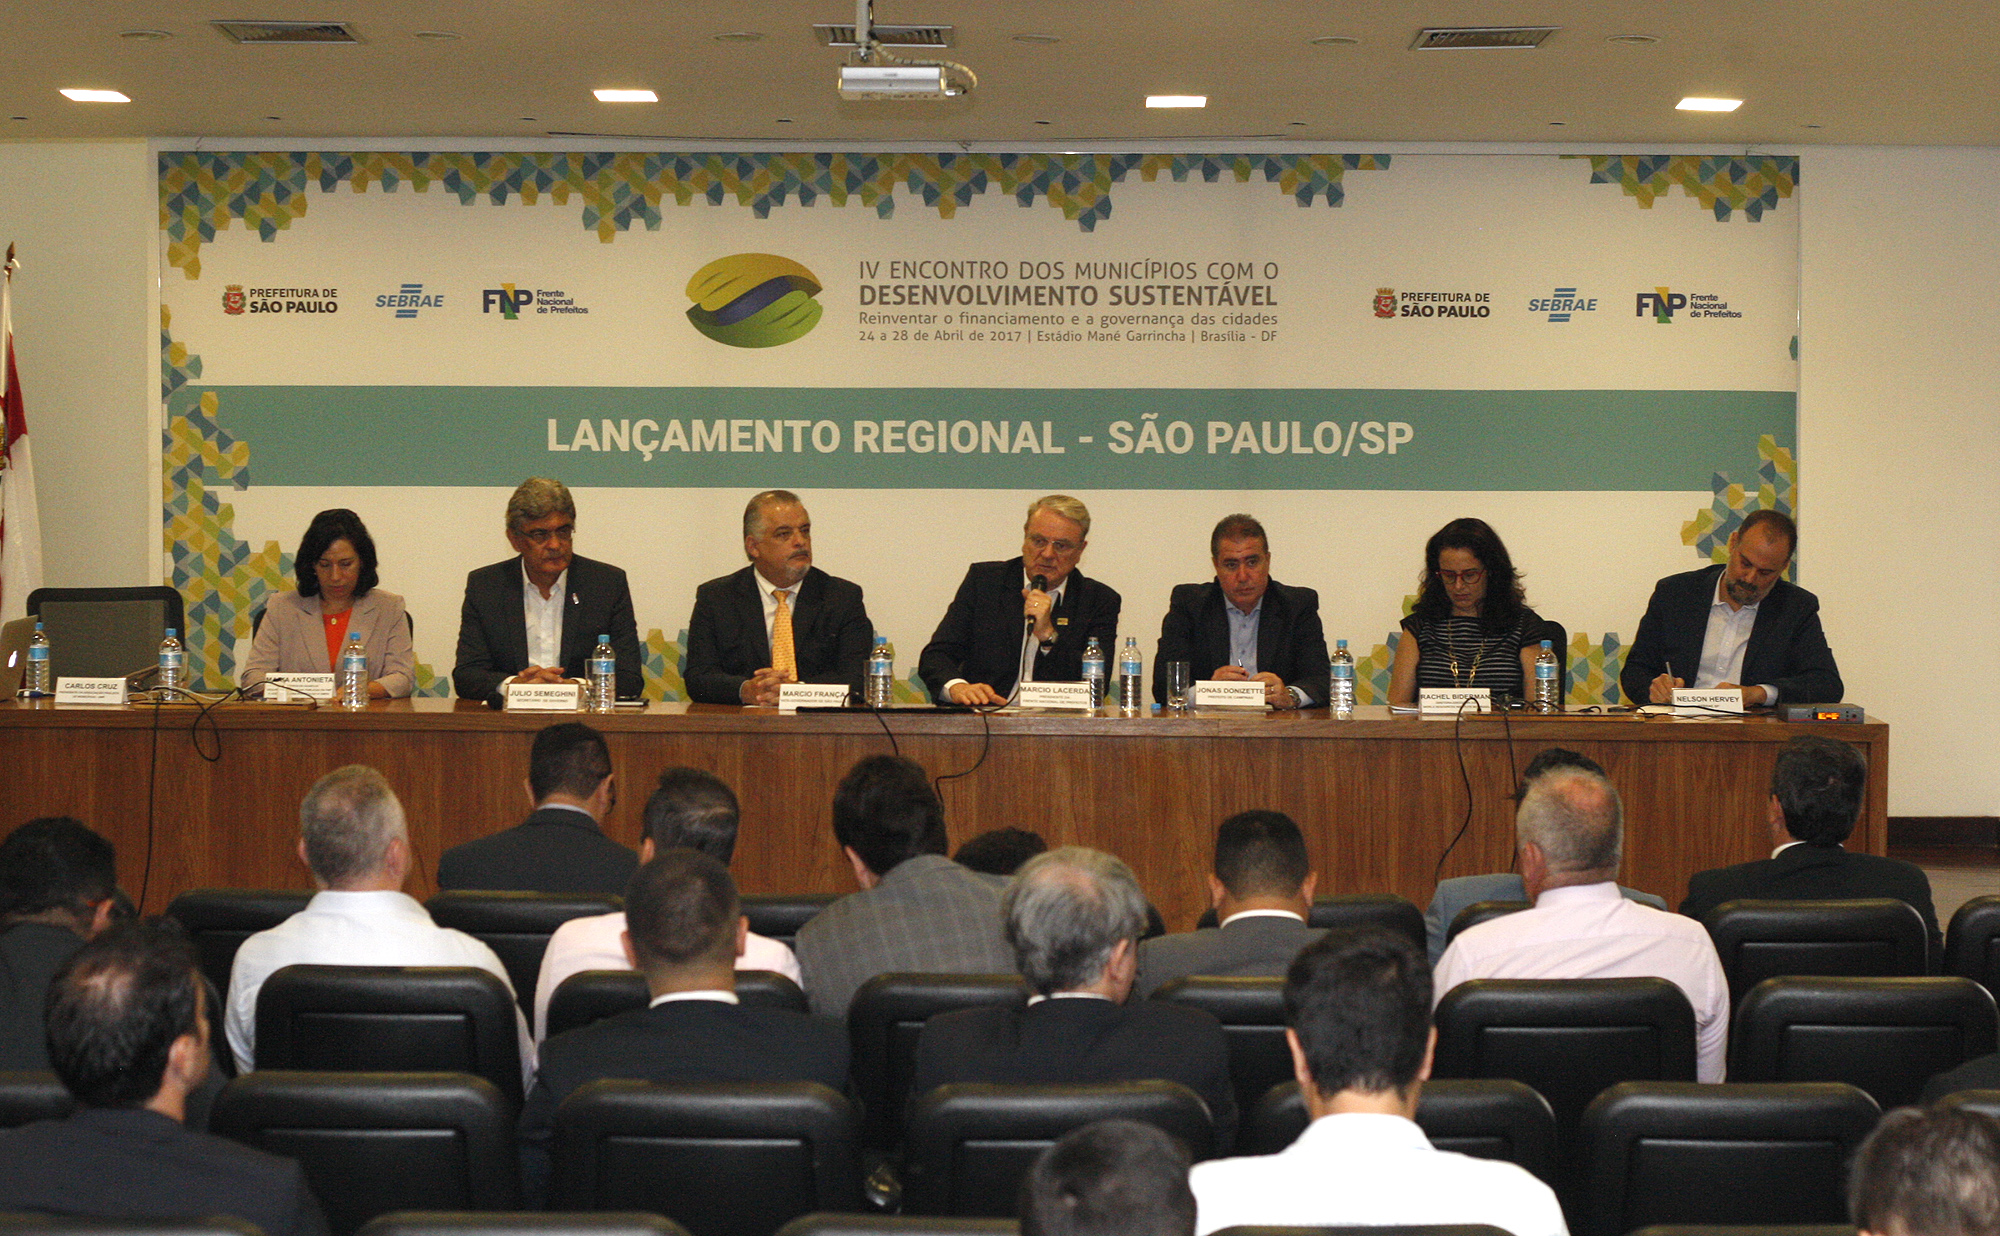 839171-Abertura da Cerimônia do Lançamento Regional São Paulo do IV Encontro dos Municípios com o Desenvolvimento Sustentável – EMDS da Frente Nacional de Prefeitos